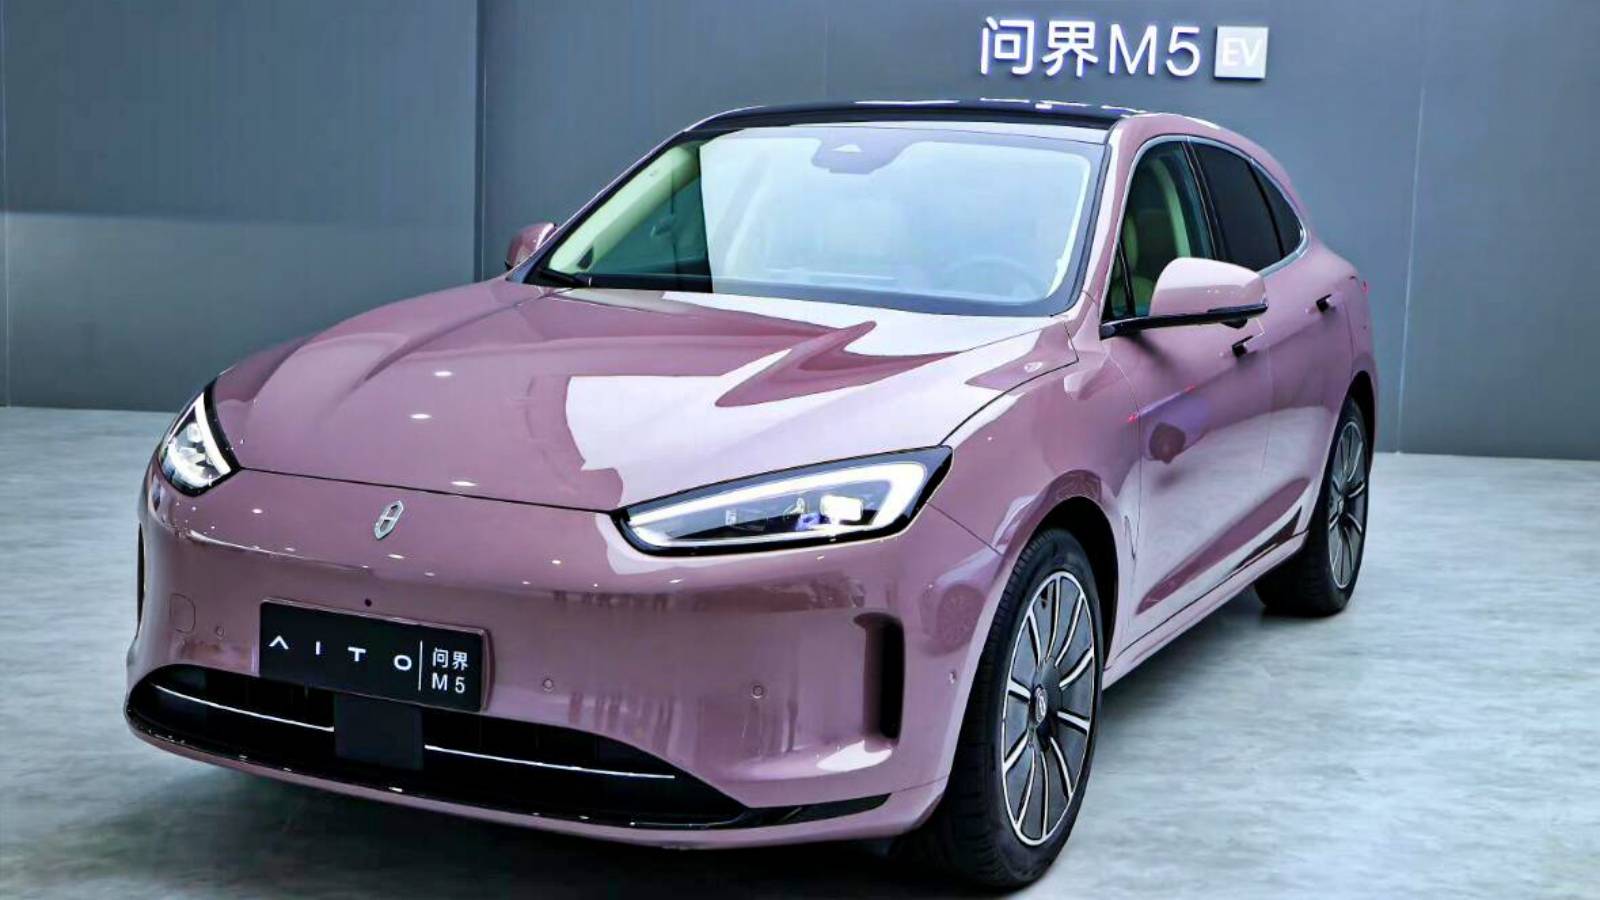 Huawei bringt offiziell den Aito M5 auf den Markt, das neue Elektroauto einer speziellen Marke